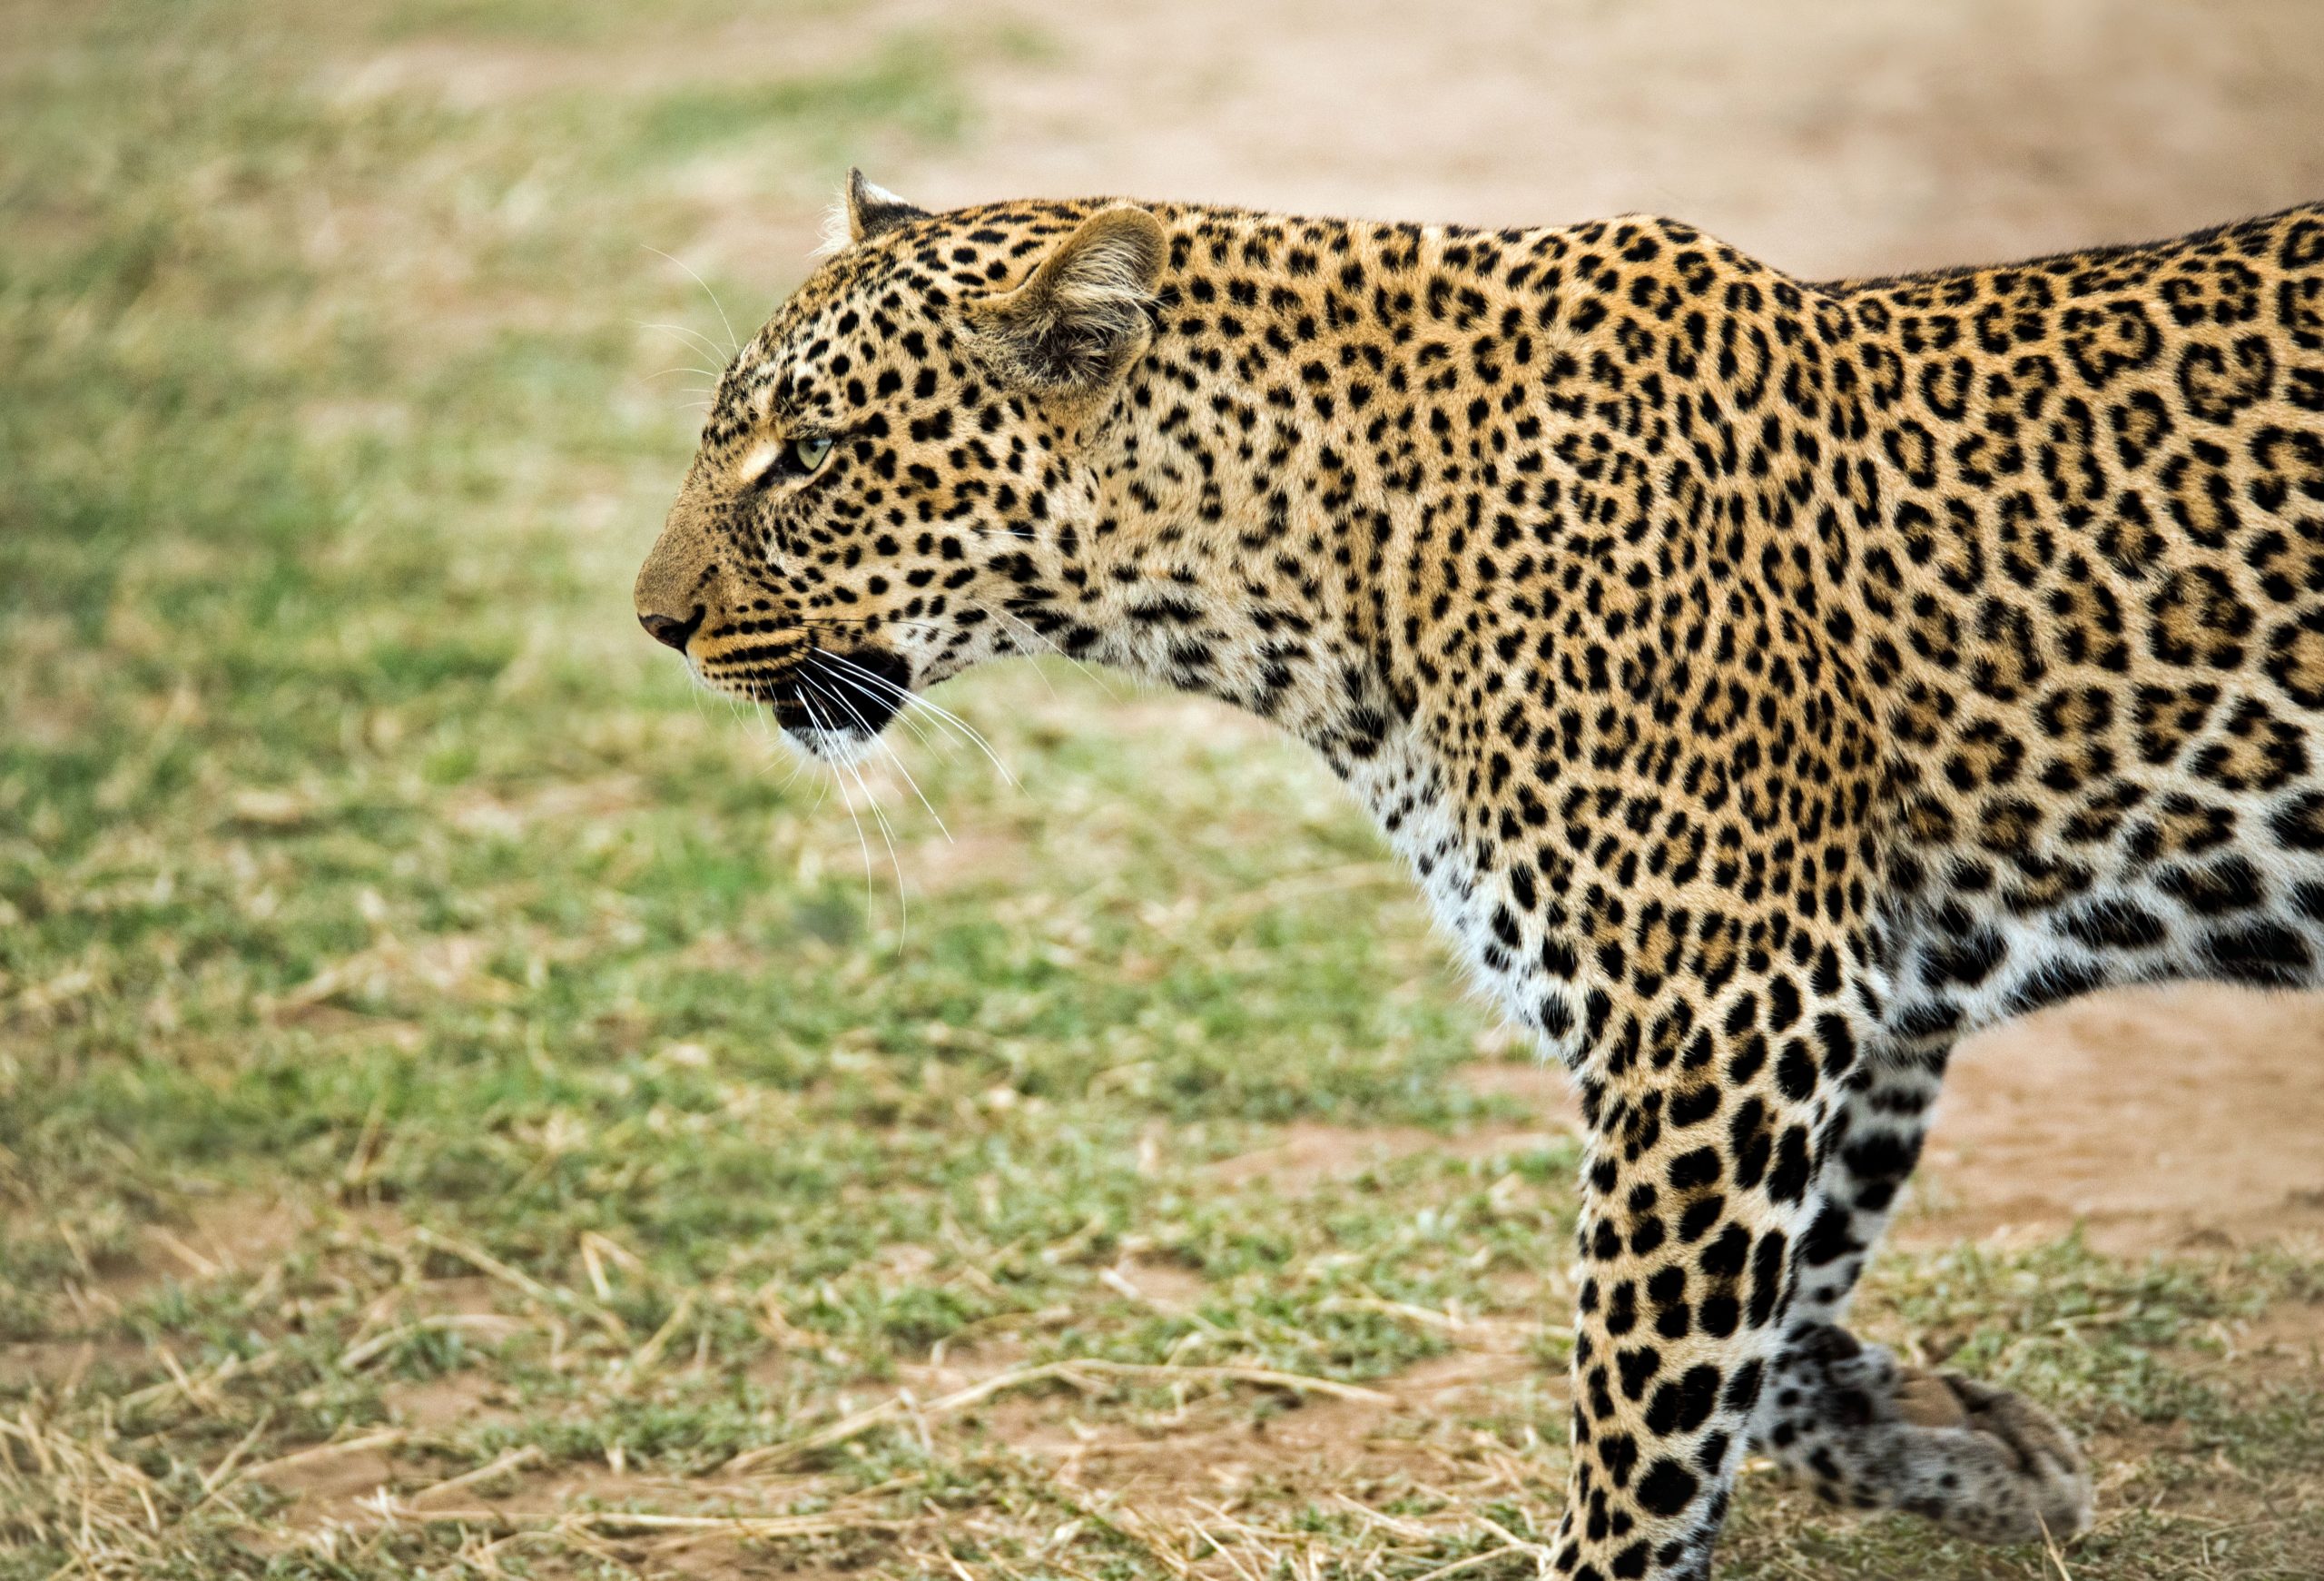 yala national park - leopards in sri lanka